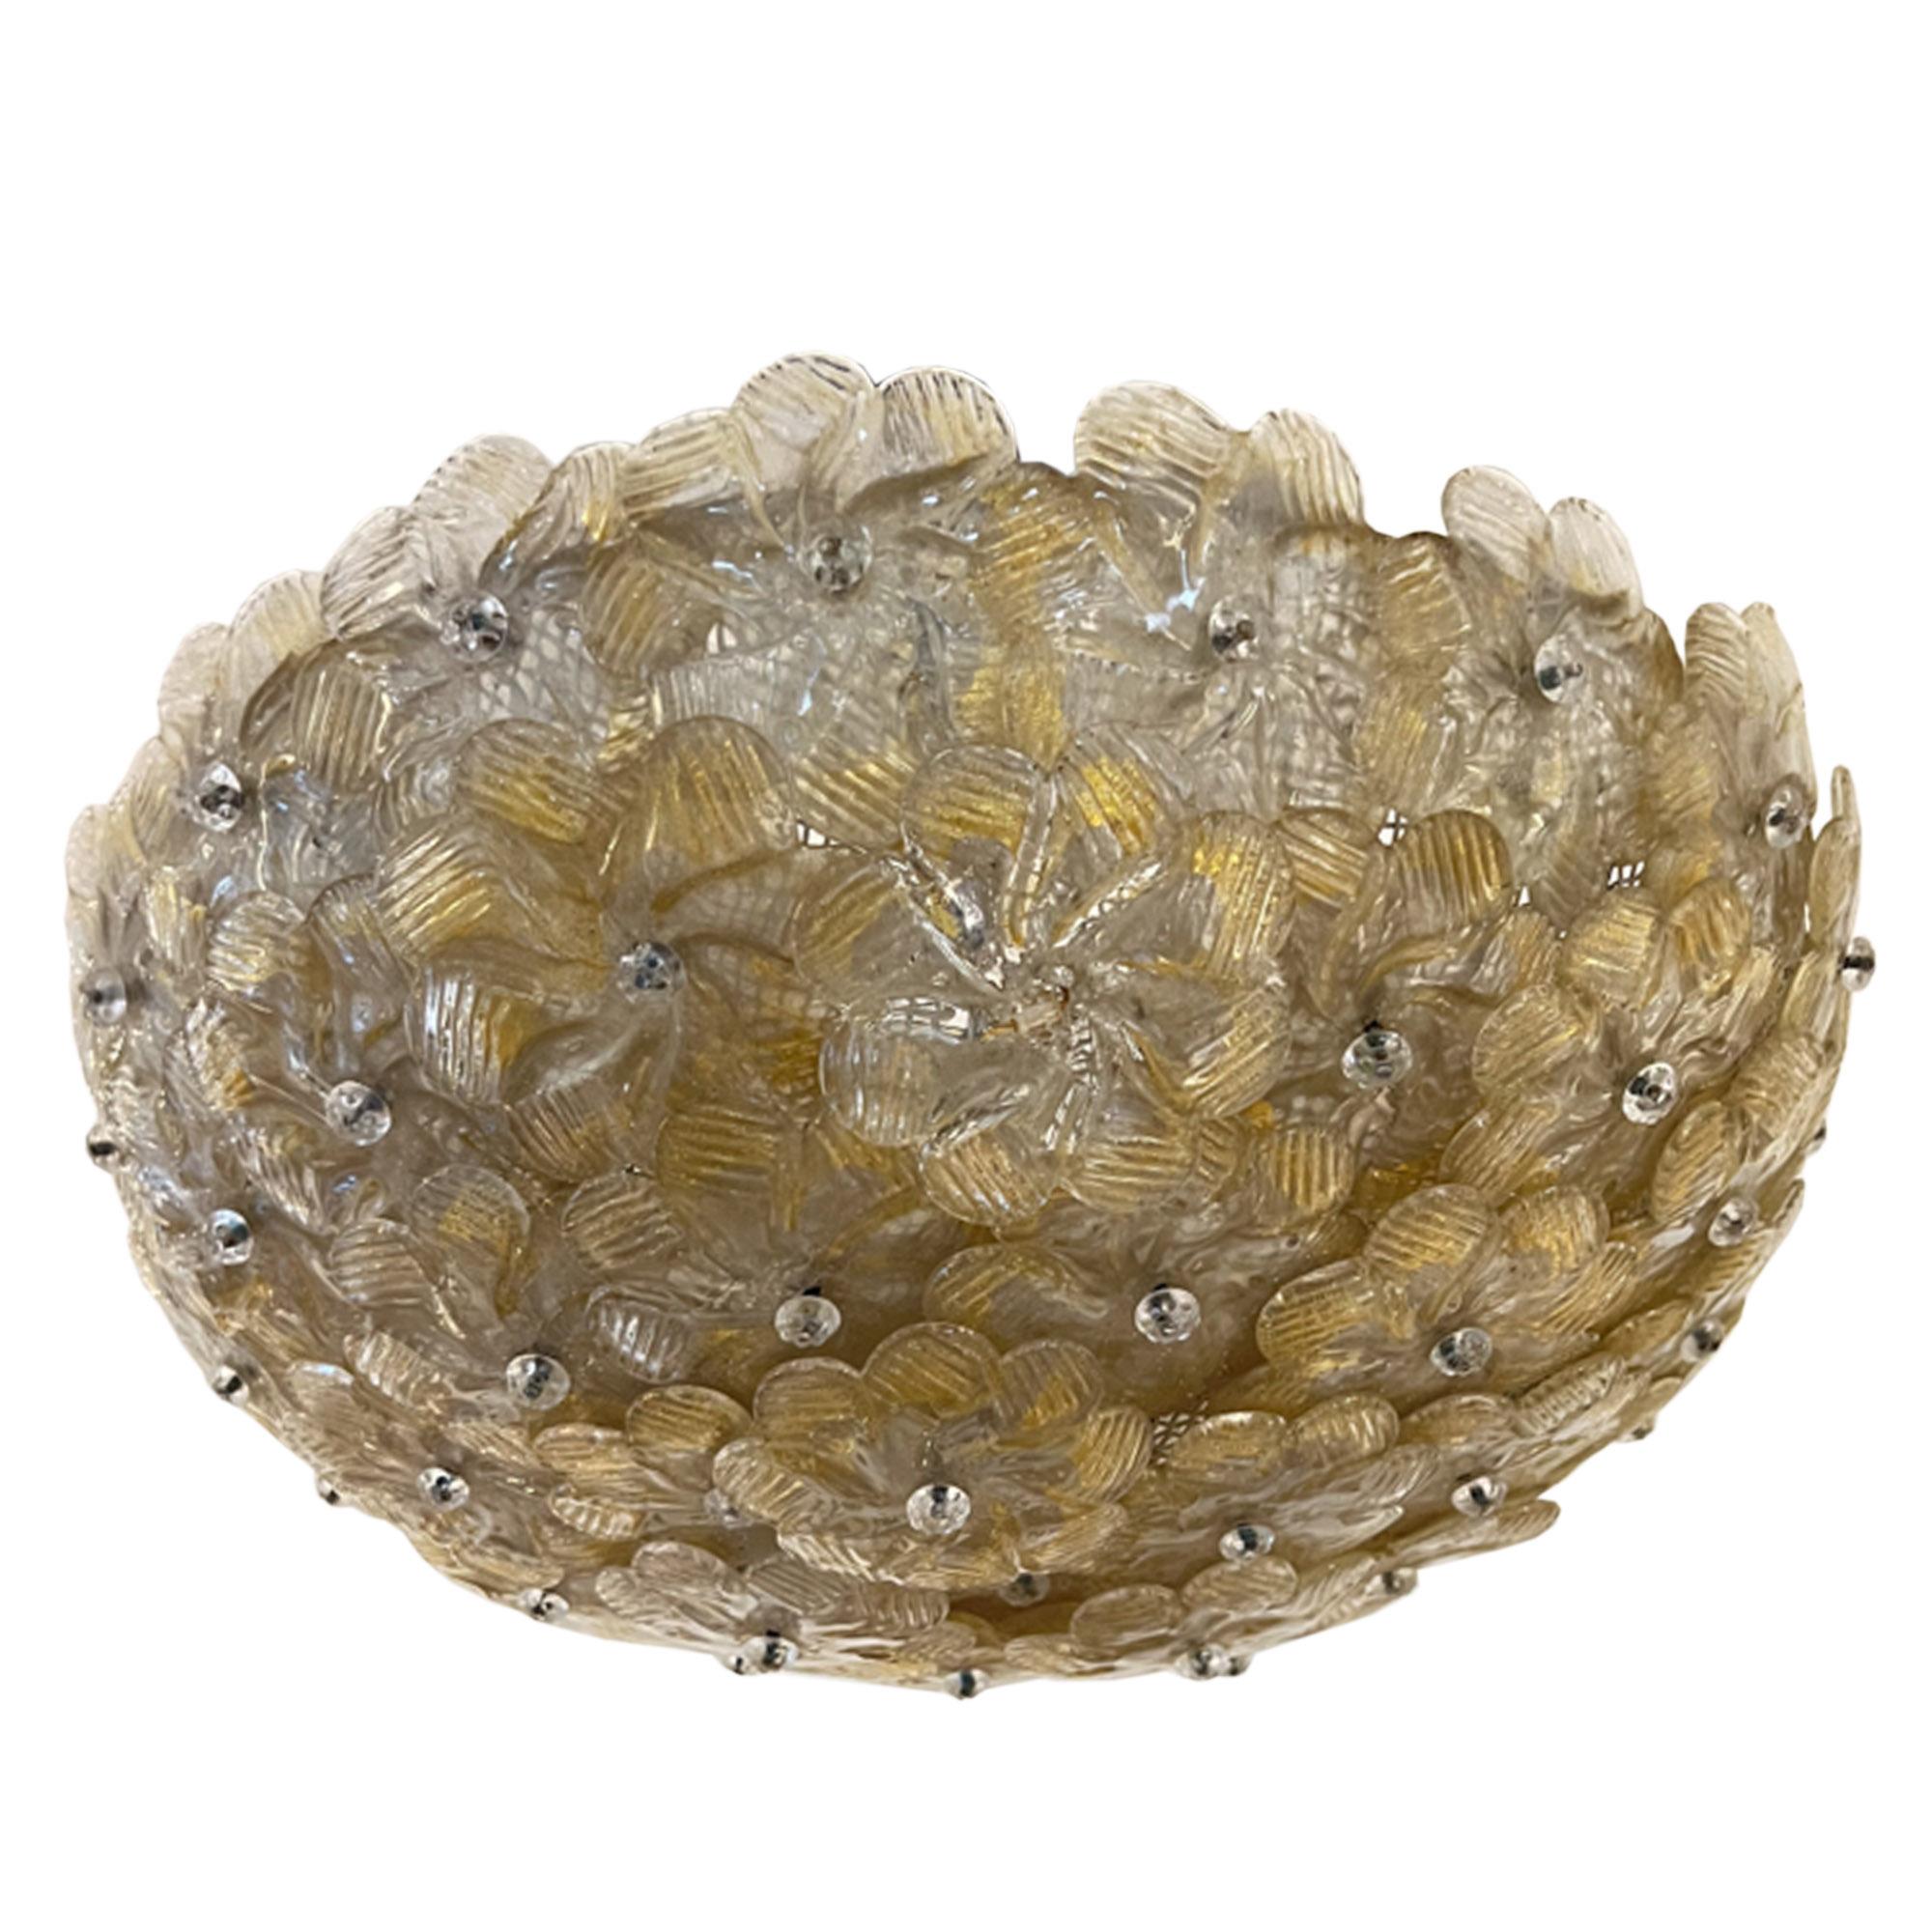 Ce magnifique luminaire italien des années 1970 est composé de fleurs en verre de Murano tessellées sur une armature métallique. 

Les fleurs fabriquées à la main ont une jolie couleur légèrement dorée - attrayante lorsqu'elles sont éclairées et à